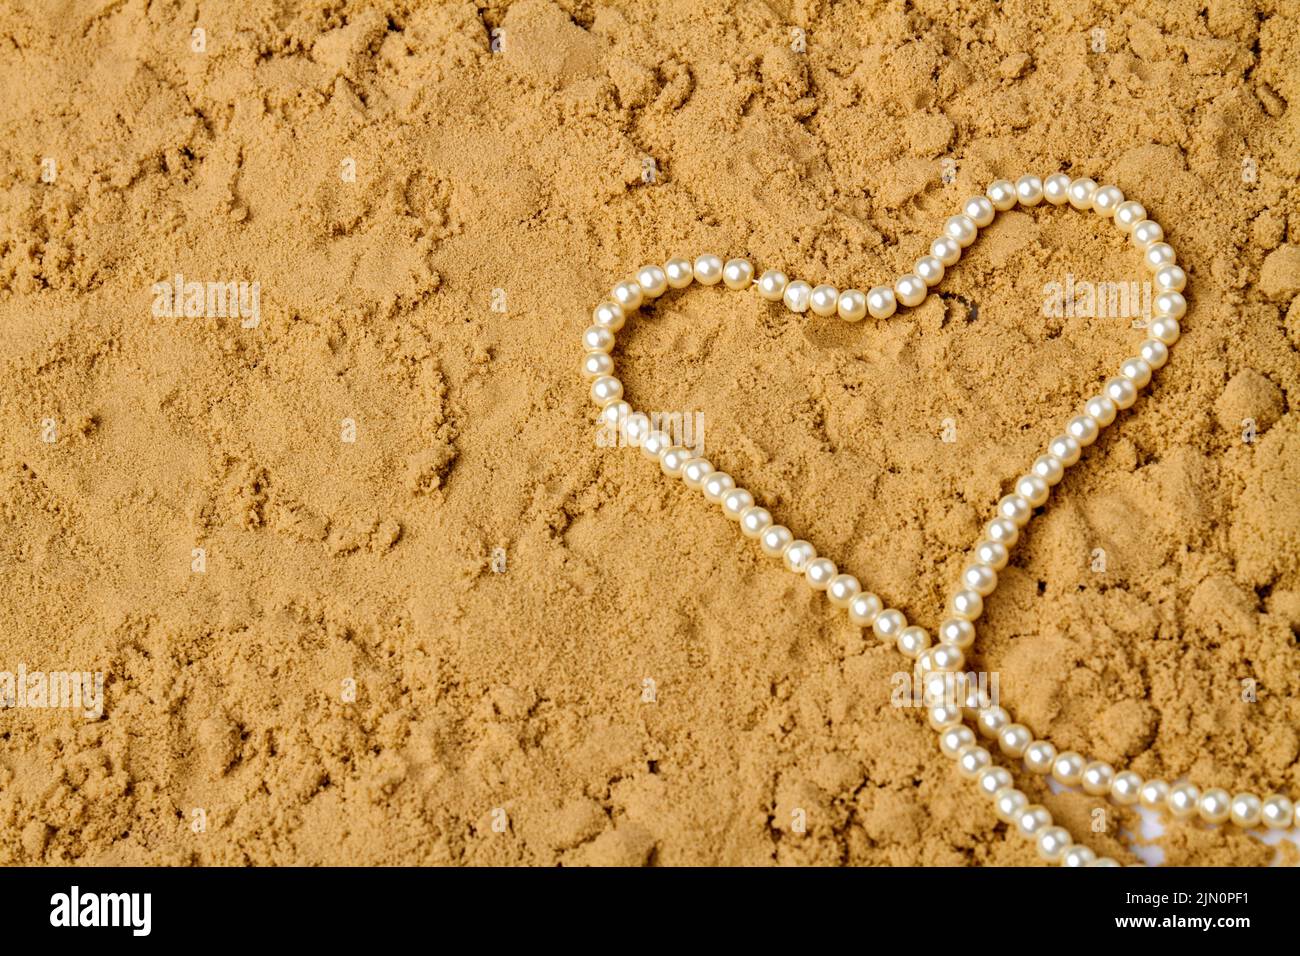 Corazón hecho de perlas blancas sobre arena húmeda. Espacio de copia de la vista superior. Foto de stock